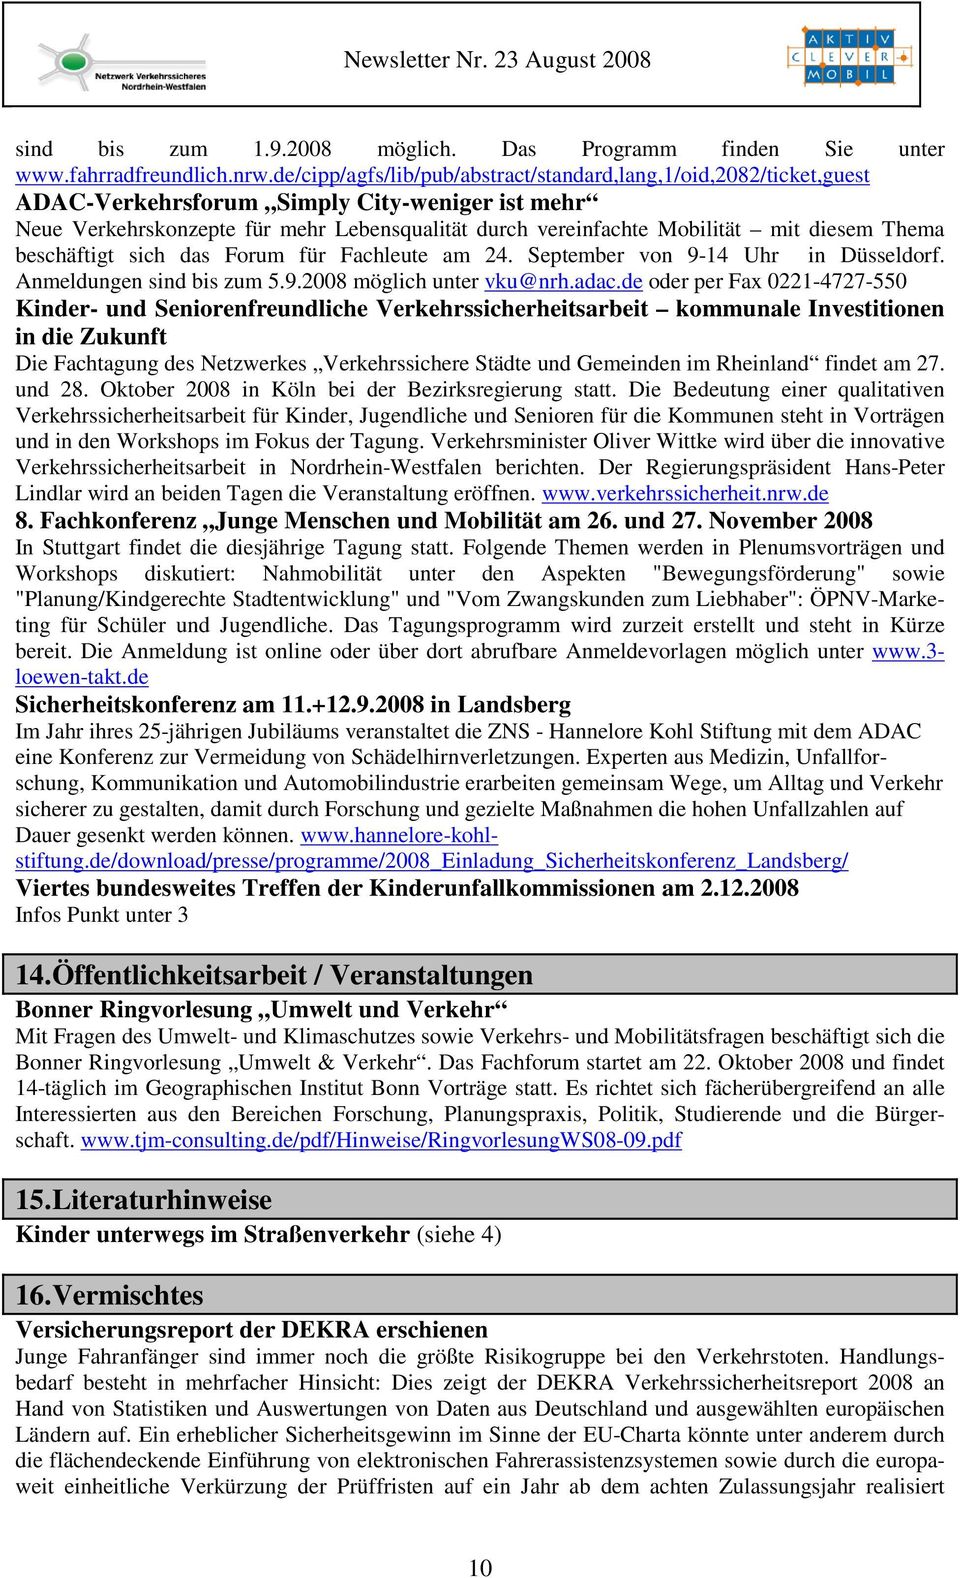 diesem Thema beschäftigt sich das Forum für Fachleute am 24. September von 9-14 Uhr in Düsseldorf. Anmeldungen sind bis zum 5.9.2008 möglich unter vku@nrh.adac.